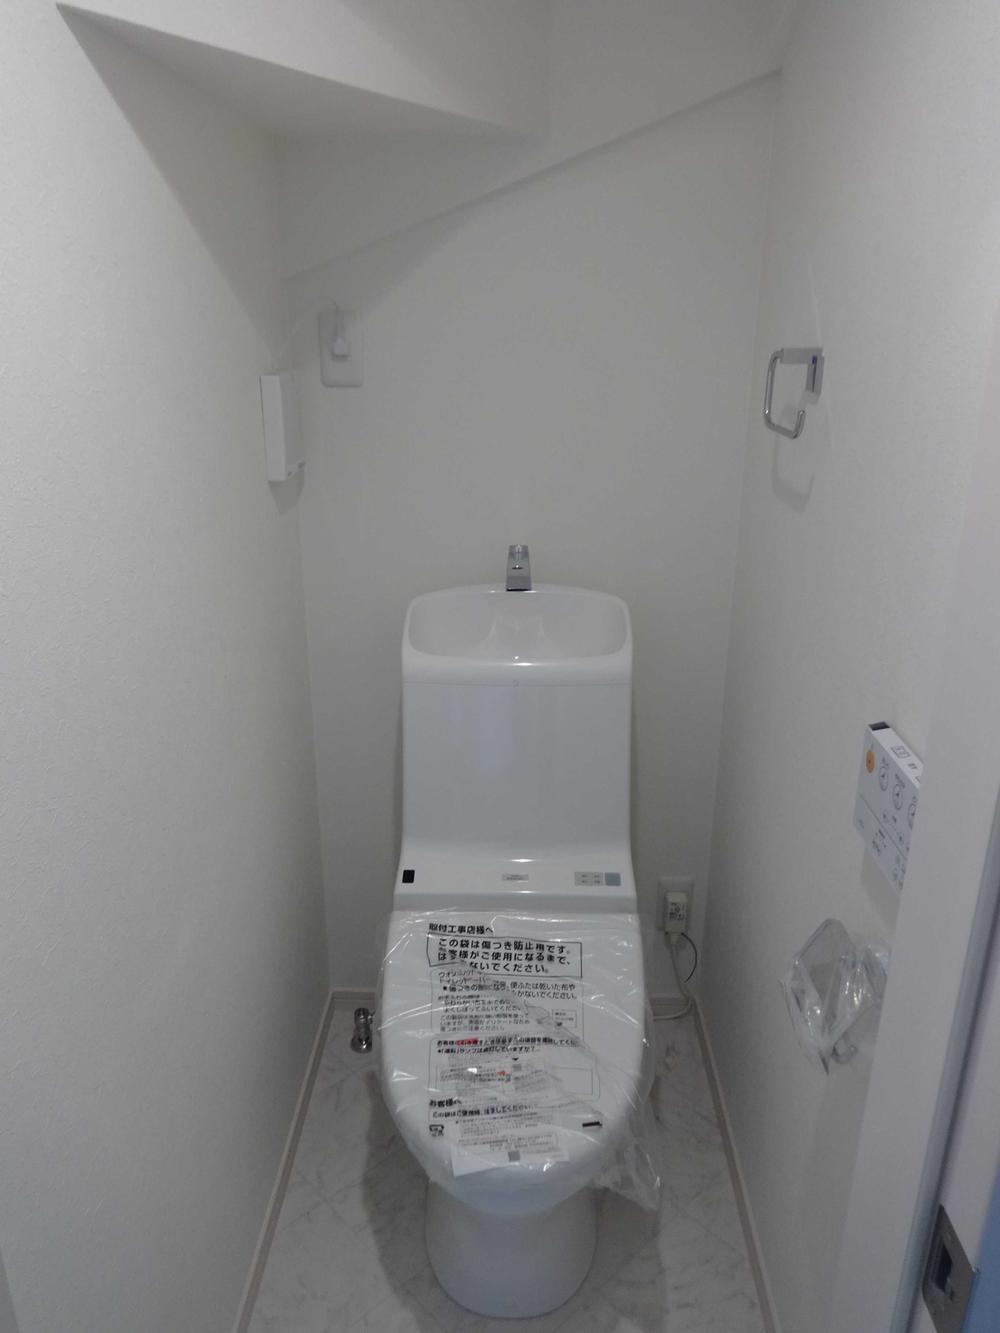 Toilet. Indoor (07 May 2013) Shooting